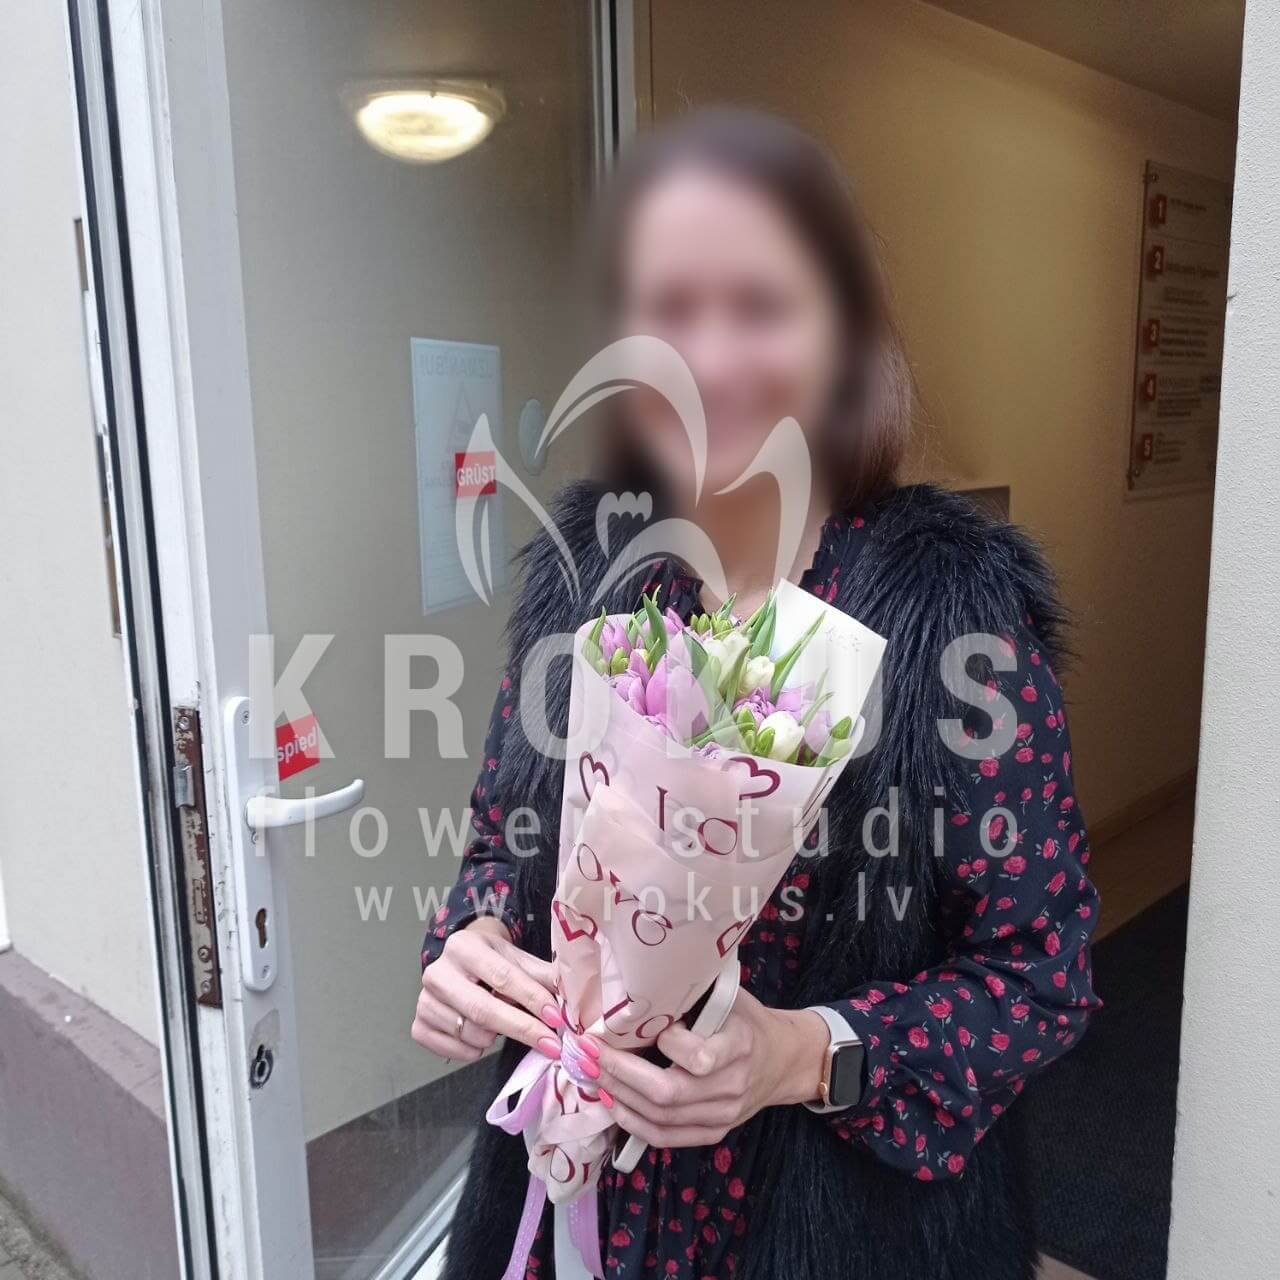 Доставка цветов в город Рига (тюльпаныфрезиипионовидные тюльпаны)